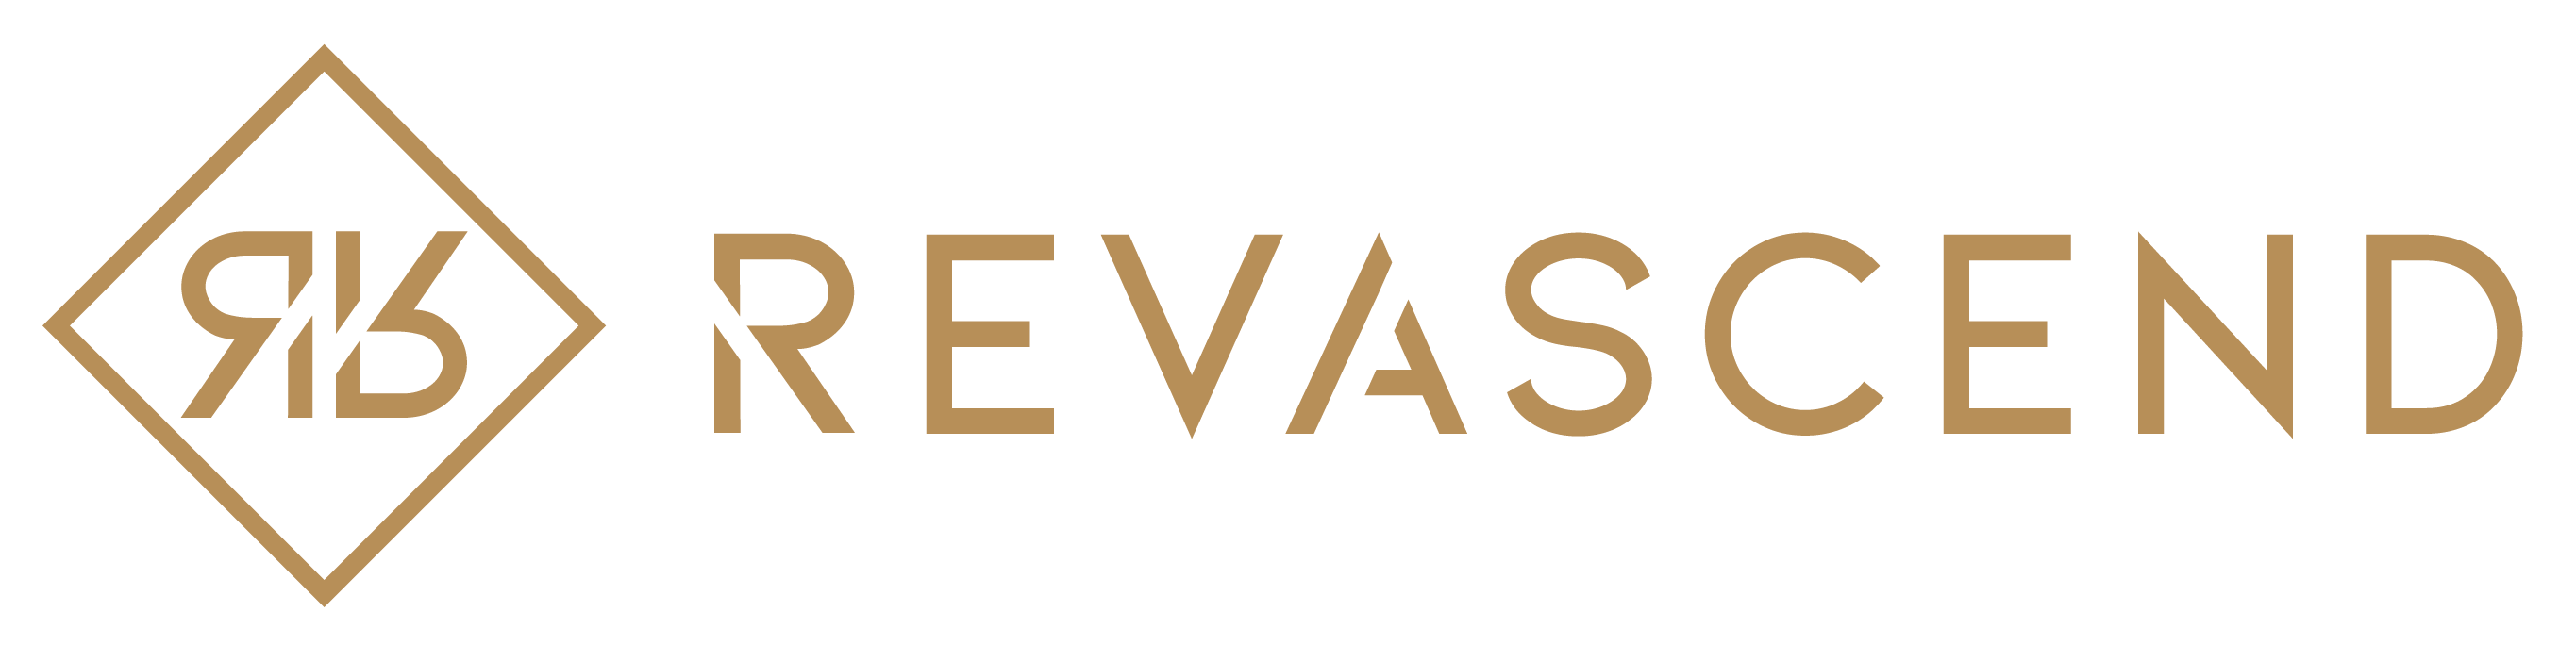 revascend_branding_vertical-gold